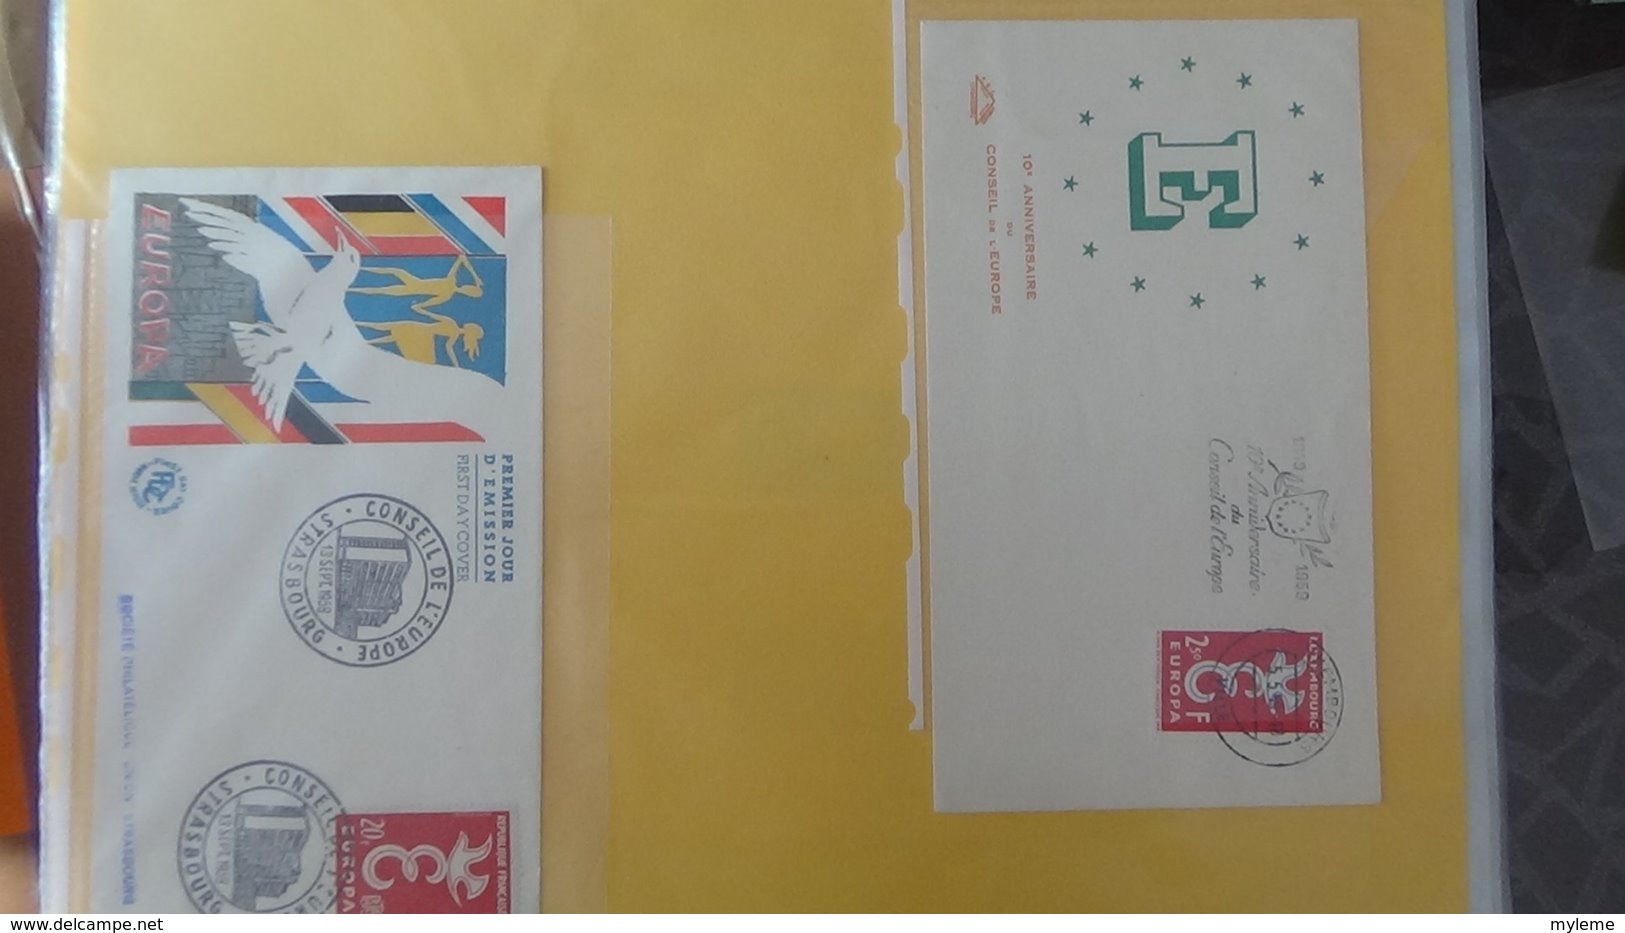 Dispersion d'une collection d'enveloppe 1er jour et autres dont 104 EUROPA de FRANCE